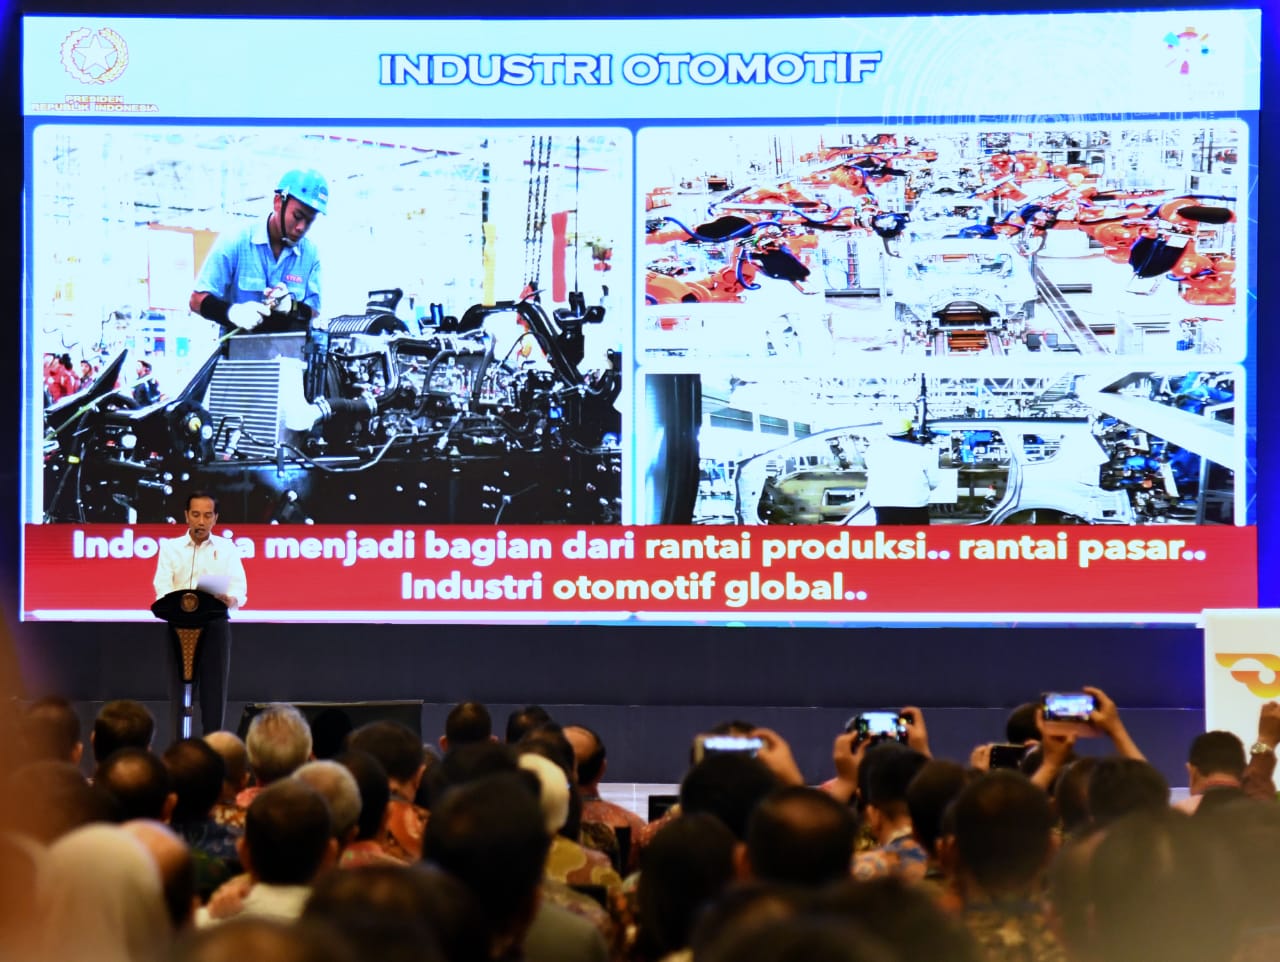 Pemerintah berkomitmen akan terus mendukung dan membantu industri otomotif nasional. Salah satunya saat Presiden bertemu dengan Perdana Menteri Vietnam Nguyen Xuan Phuc untuk menyelesaikan masalah ekspor produksi otomotif Indonesia ke Vietnam.

